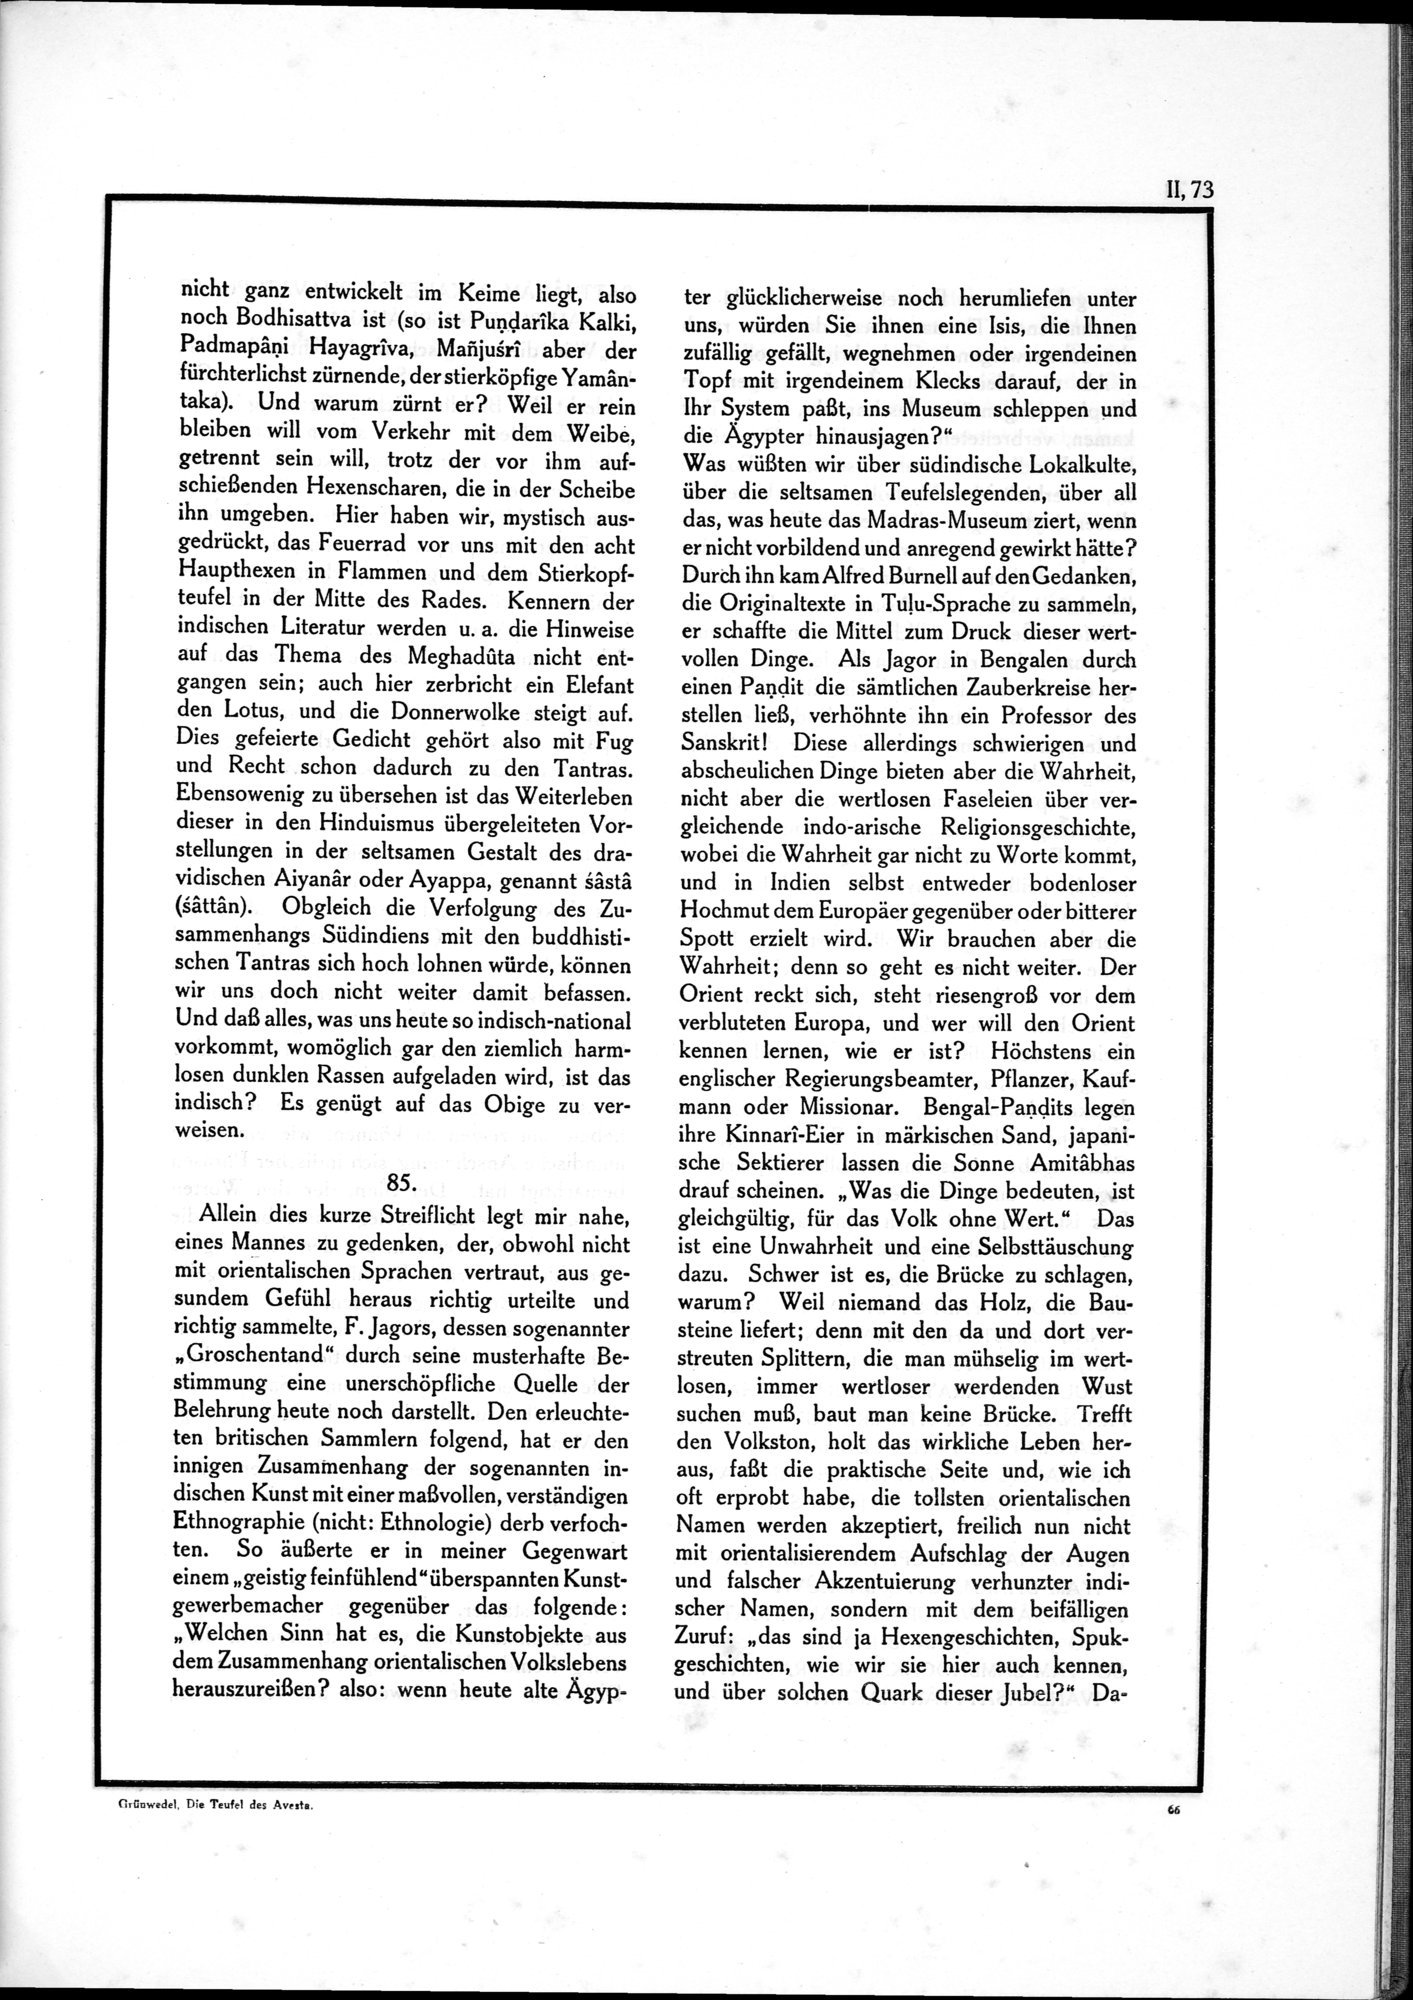 Die Teufel des Avesta und Ihre Beziehungen zur Ikonographie des Buddhismus Zentral-Asiens : vol.1 / Page 529 (Grayscale High Resolution Image)